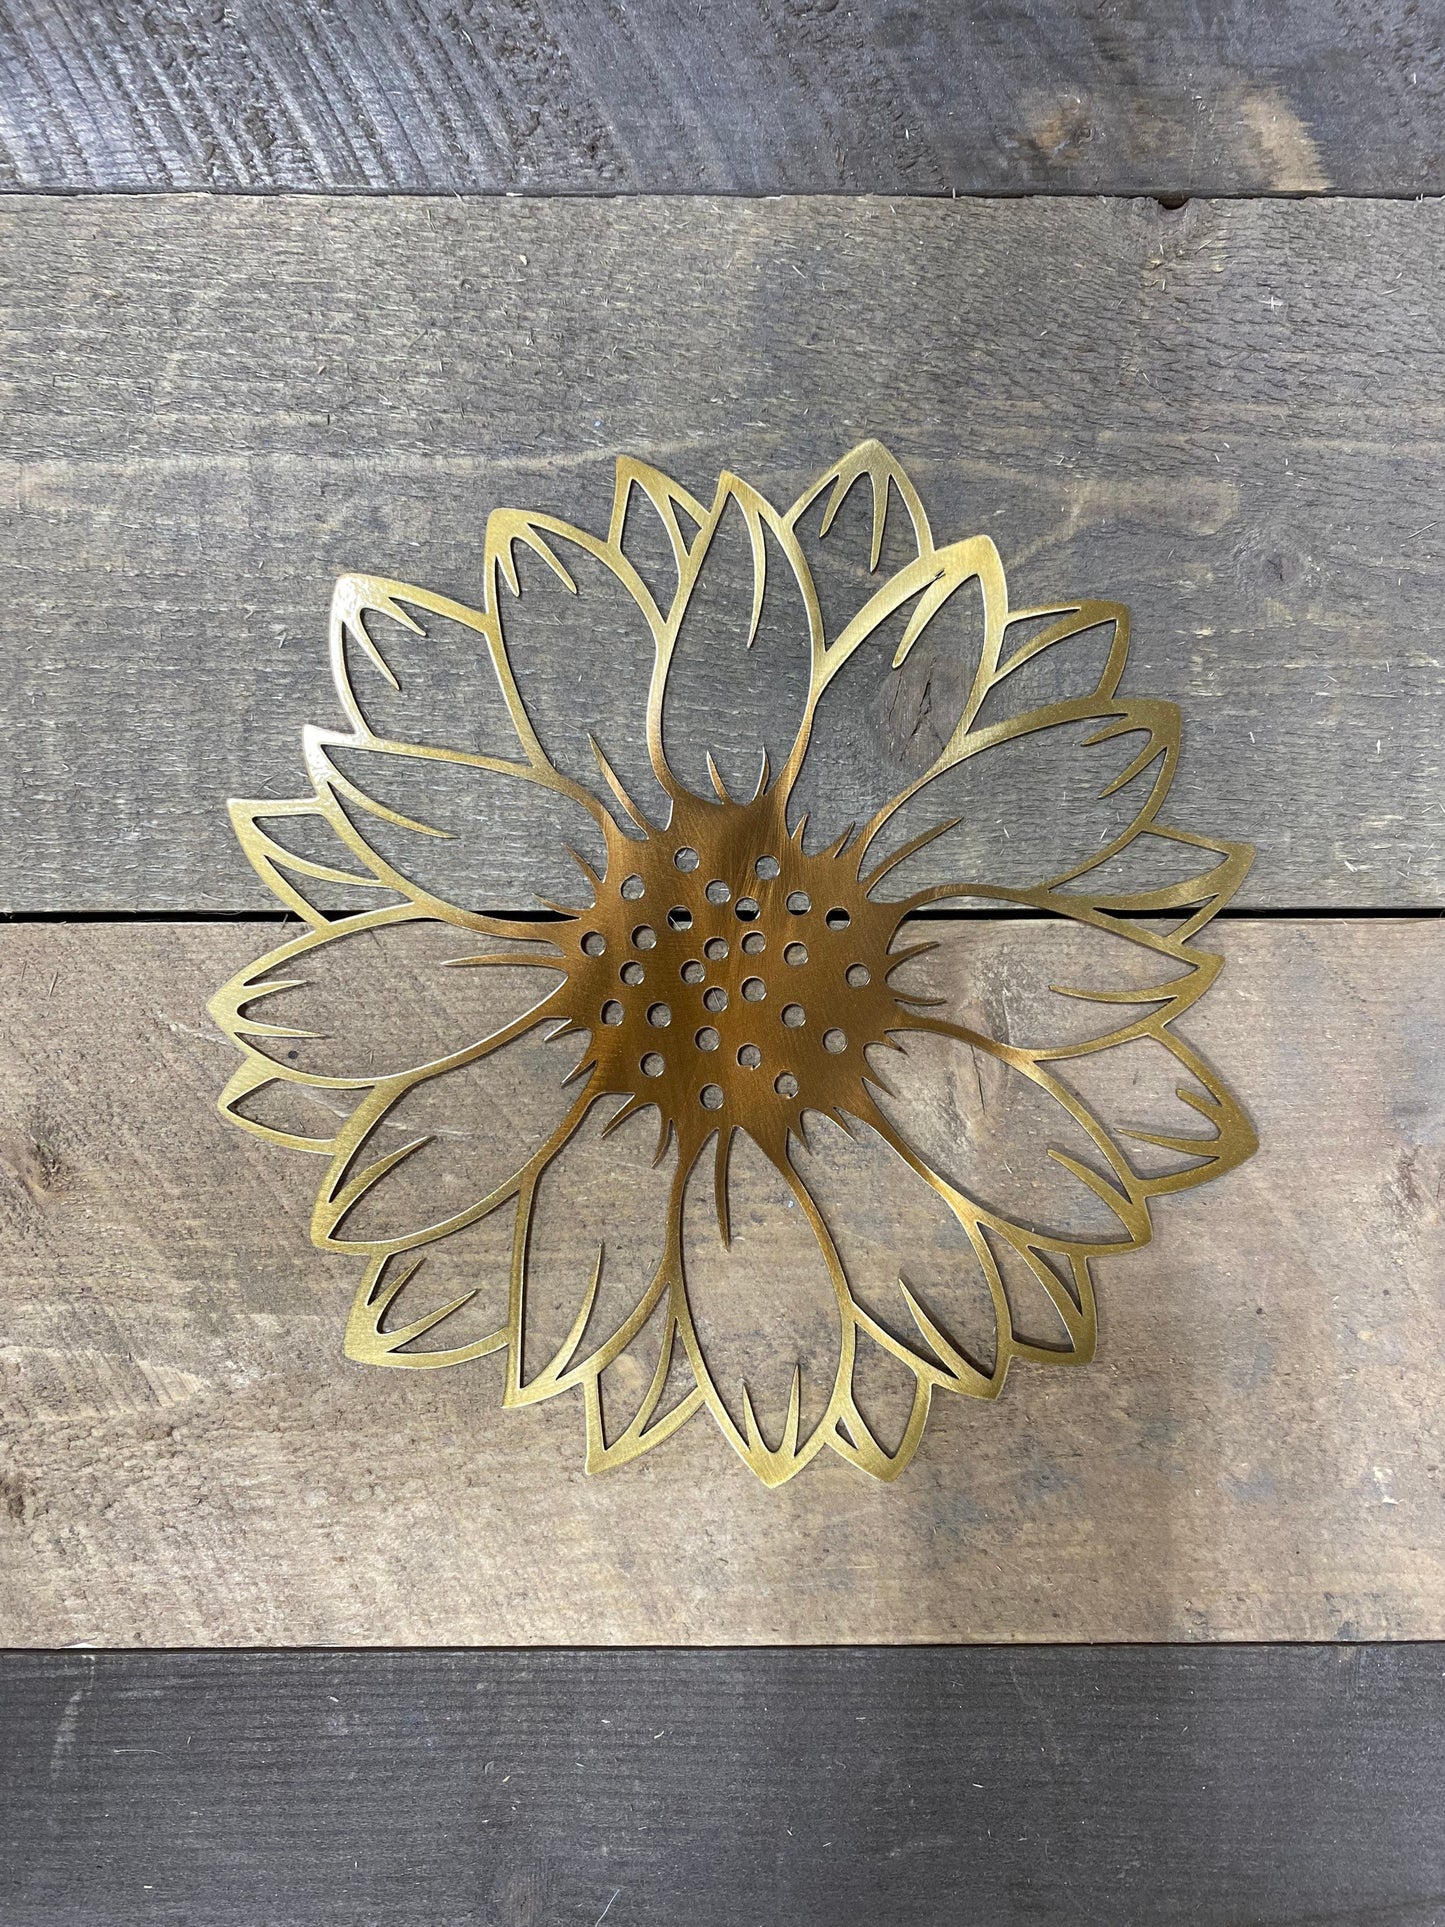 Sunflower Metal wall art, sunflower decor, she shed decor, sunflower accent